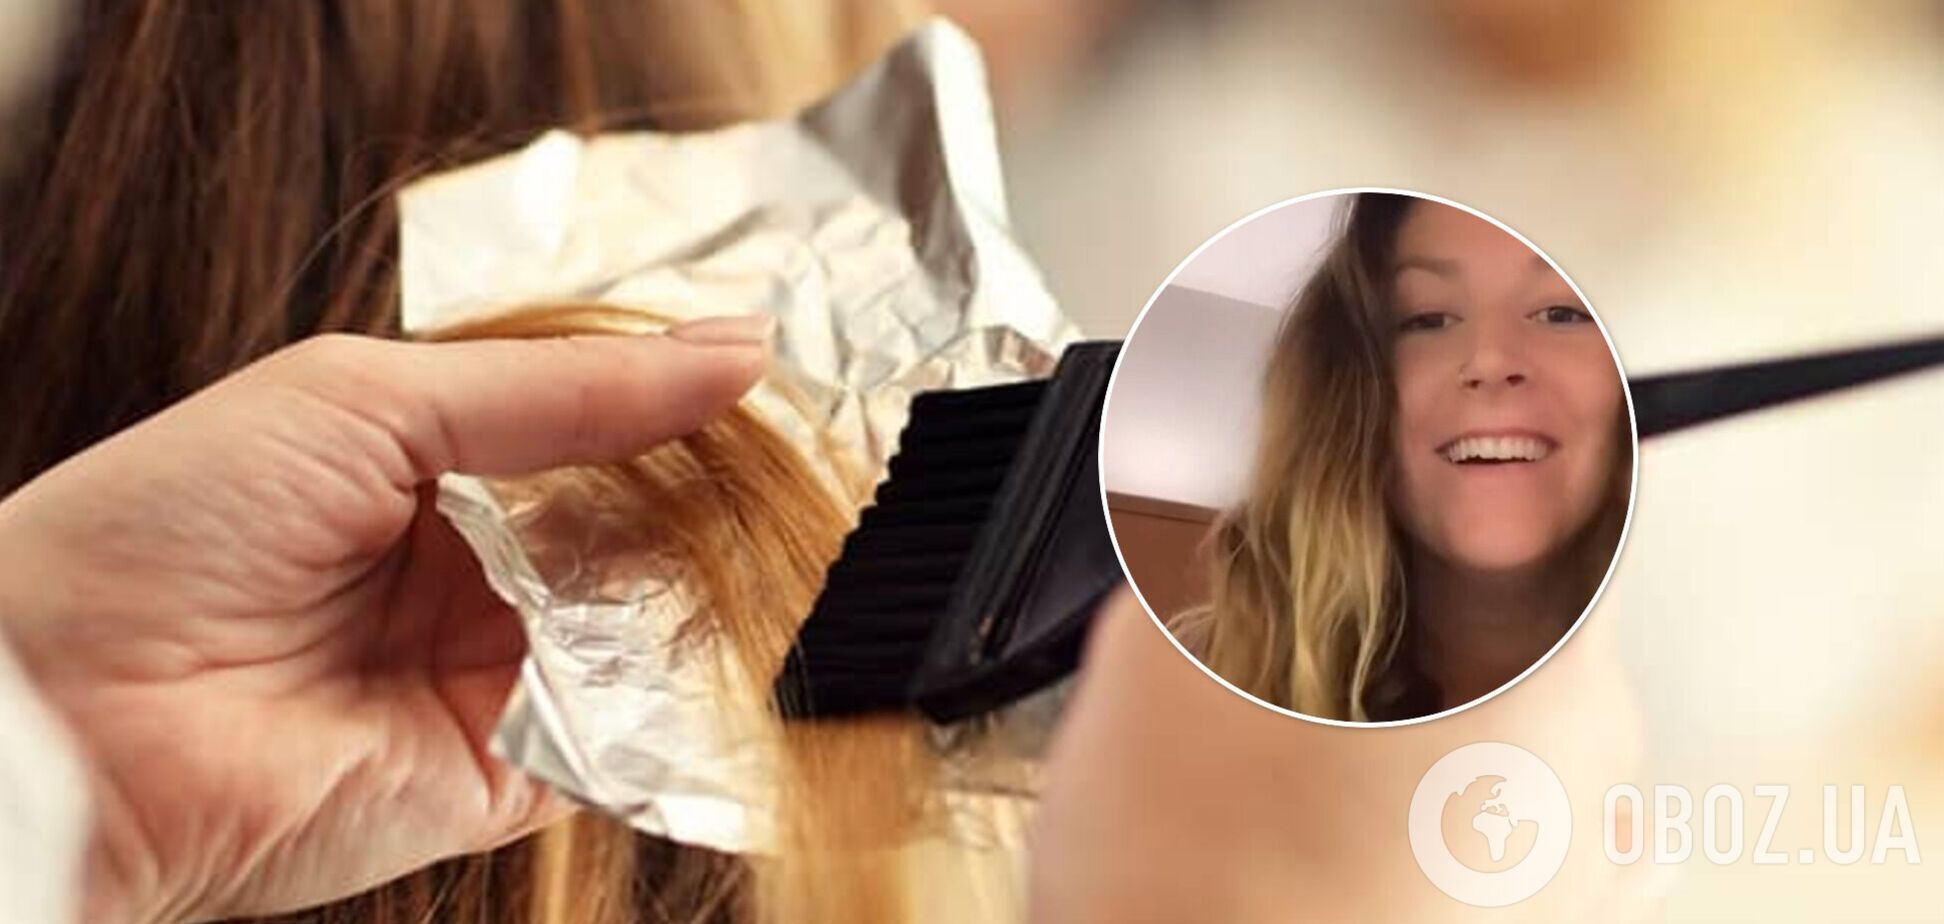 Американке в салоне красоты случайно испортили волосы отбеливателем. Видео